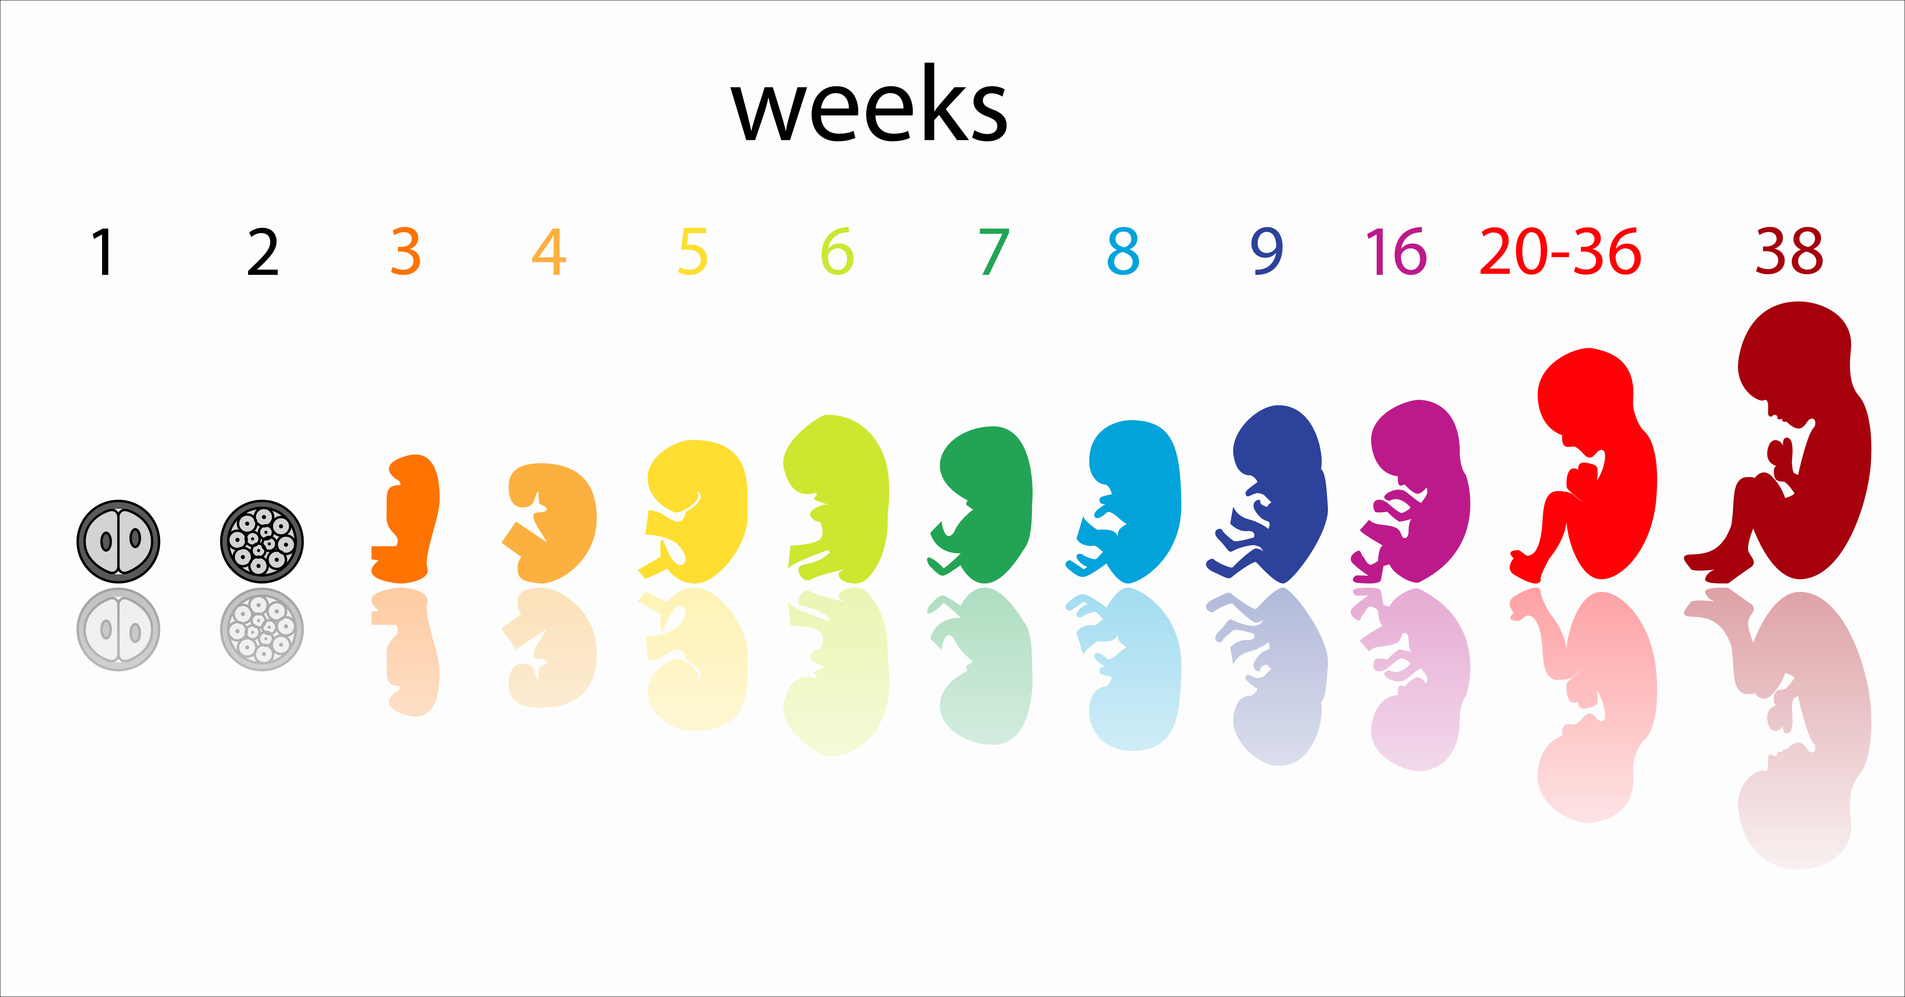 Во второй половине недели. Развитие малыша по неделям беременности. Формирование ребенка по неделям беременности 1 триместр. Развитие плода по неделям в картинках. Развитие ребенка по триместрам беременности.